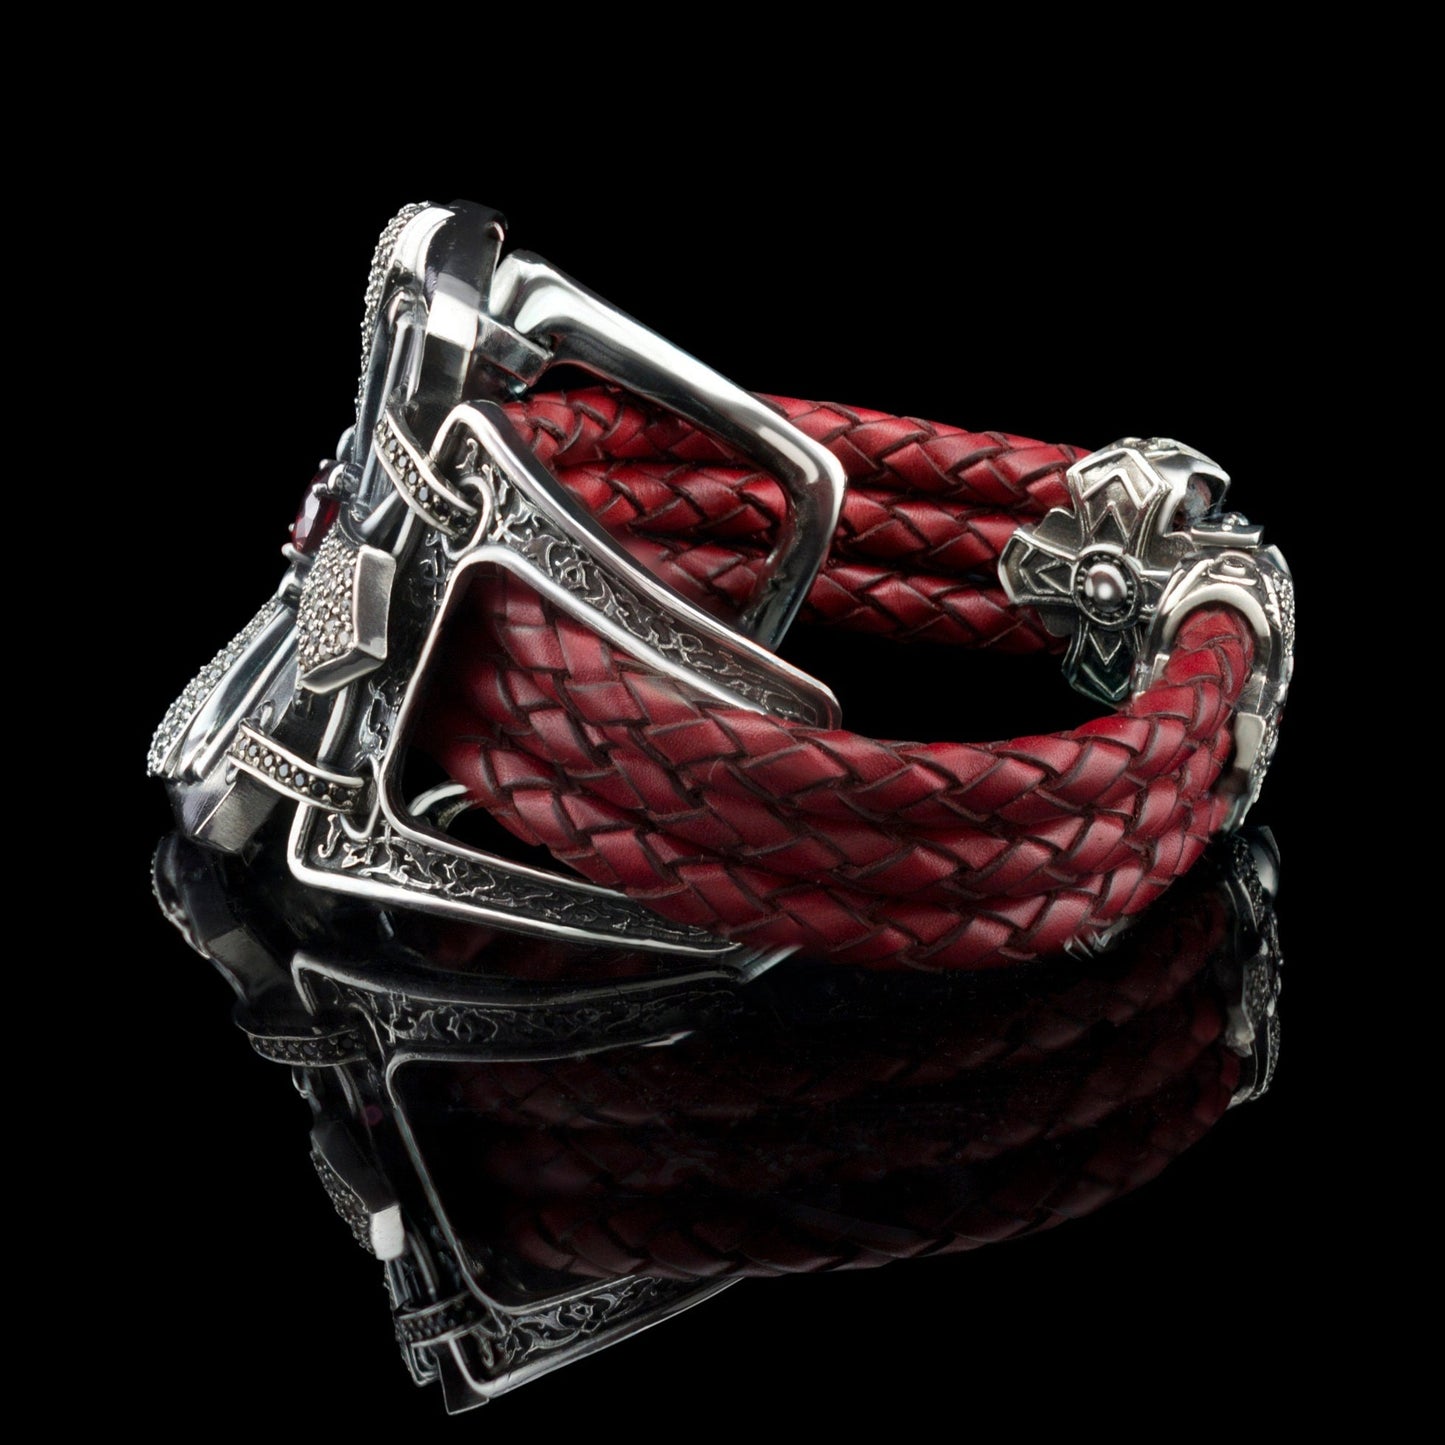 Cross bracelet Leather women's bracelet Red leather bracelet